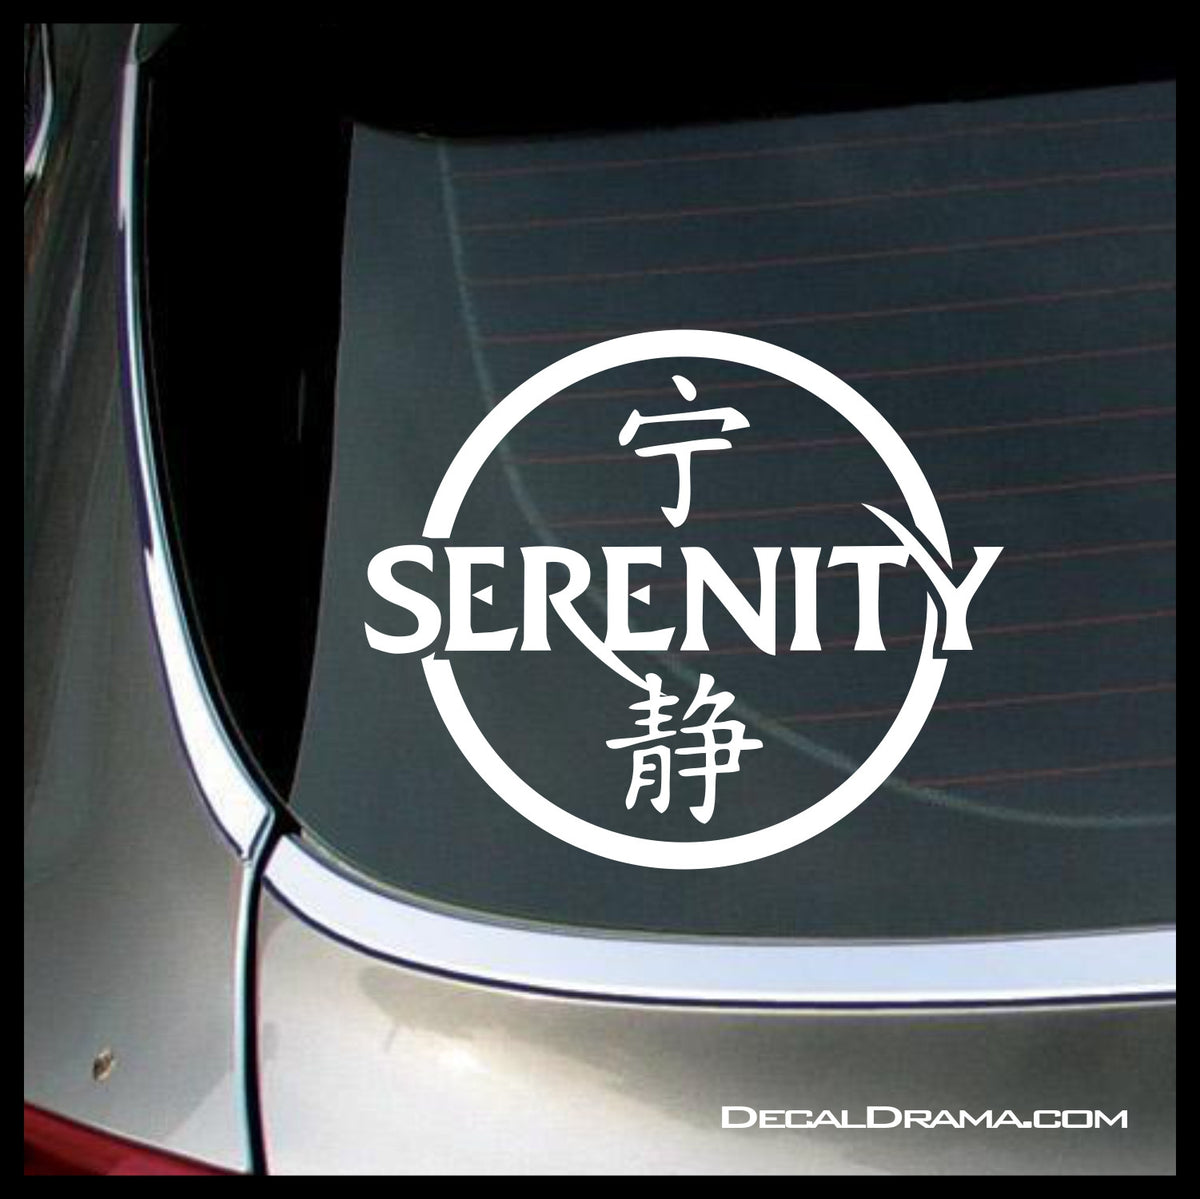  Firefly Serenity Inspired Ship Outline Vinyl Sticker